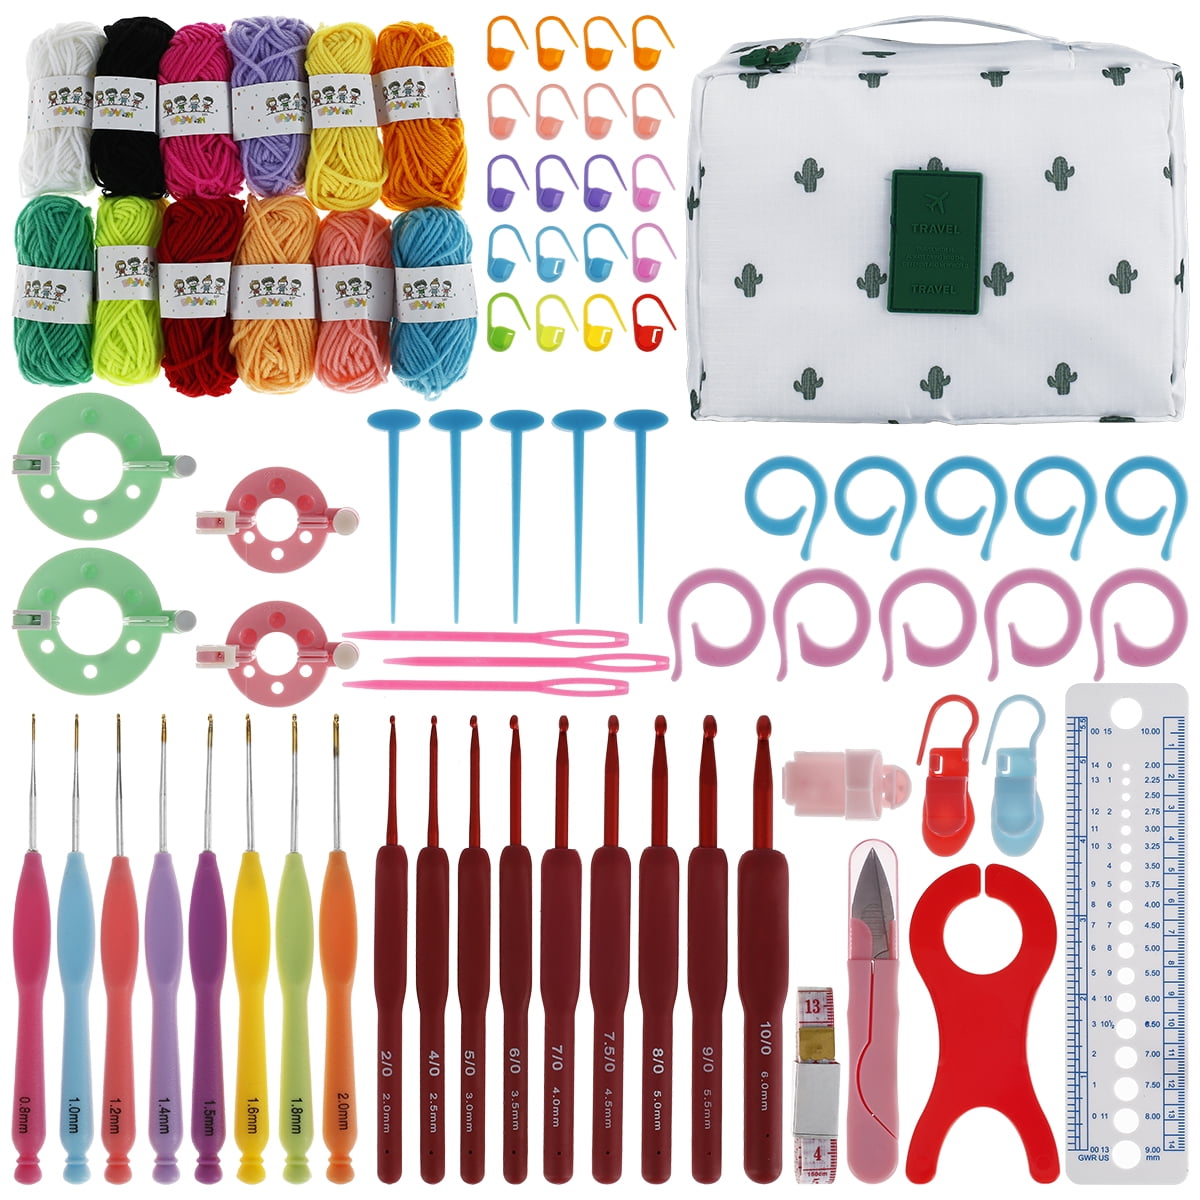 MLfire 68PCS Crochet Kits for Beginners Colorful Crochet Hooks Set with  Case Practical Knitting Starter Kit 13 Crochet Hooks 6 Rolls Yarn and